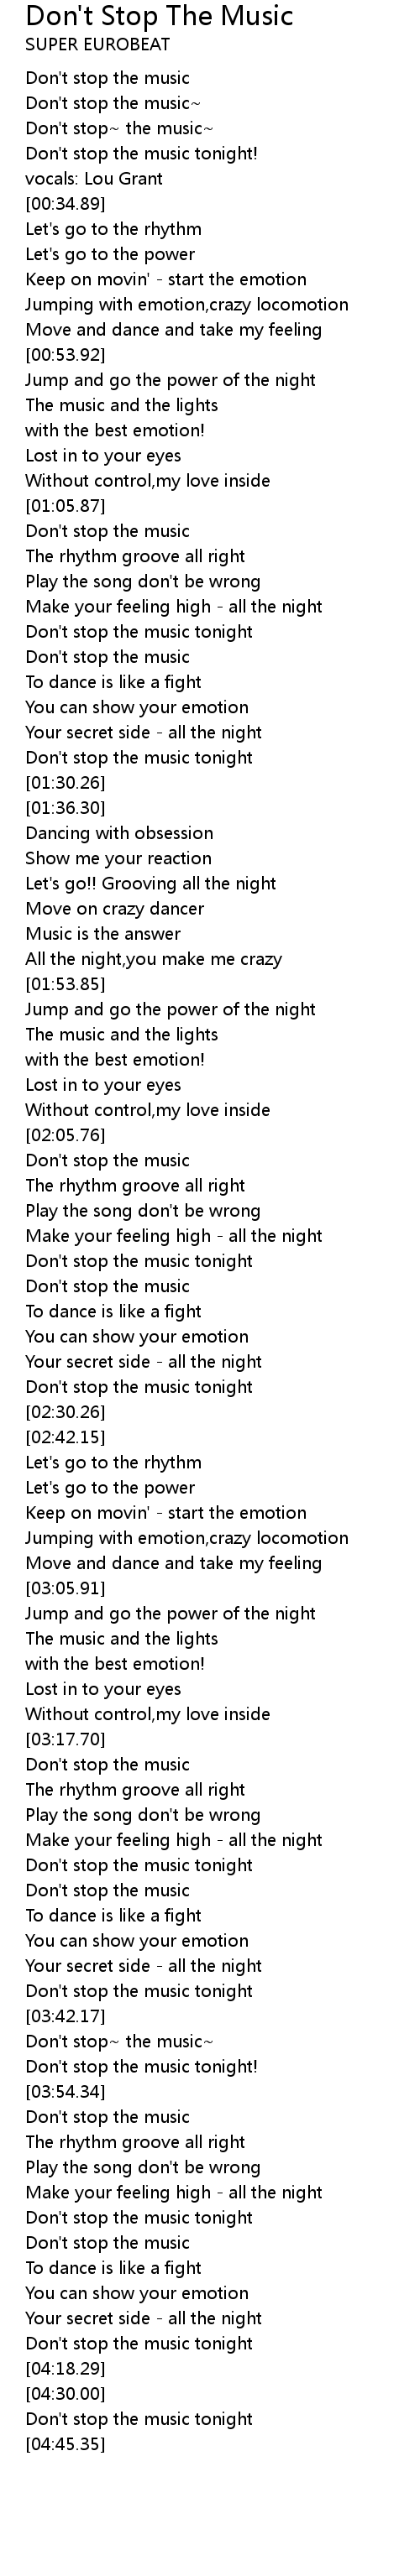 Don T Stop The Music Lyrics Follow Lyrics